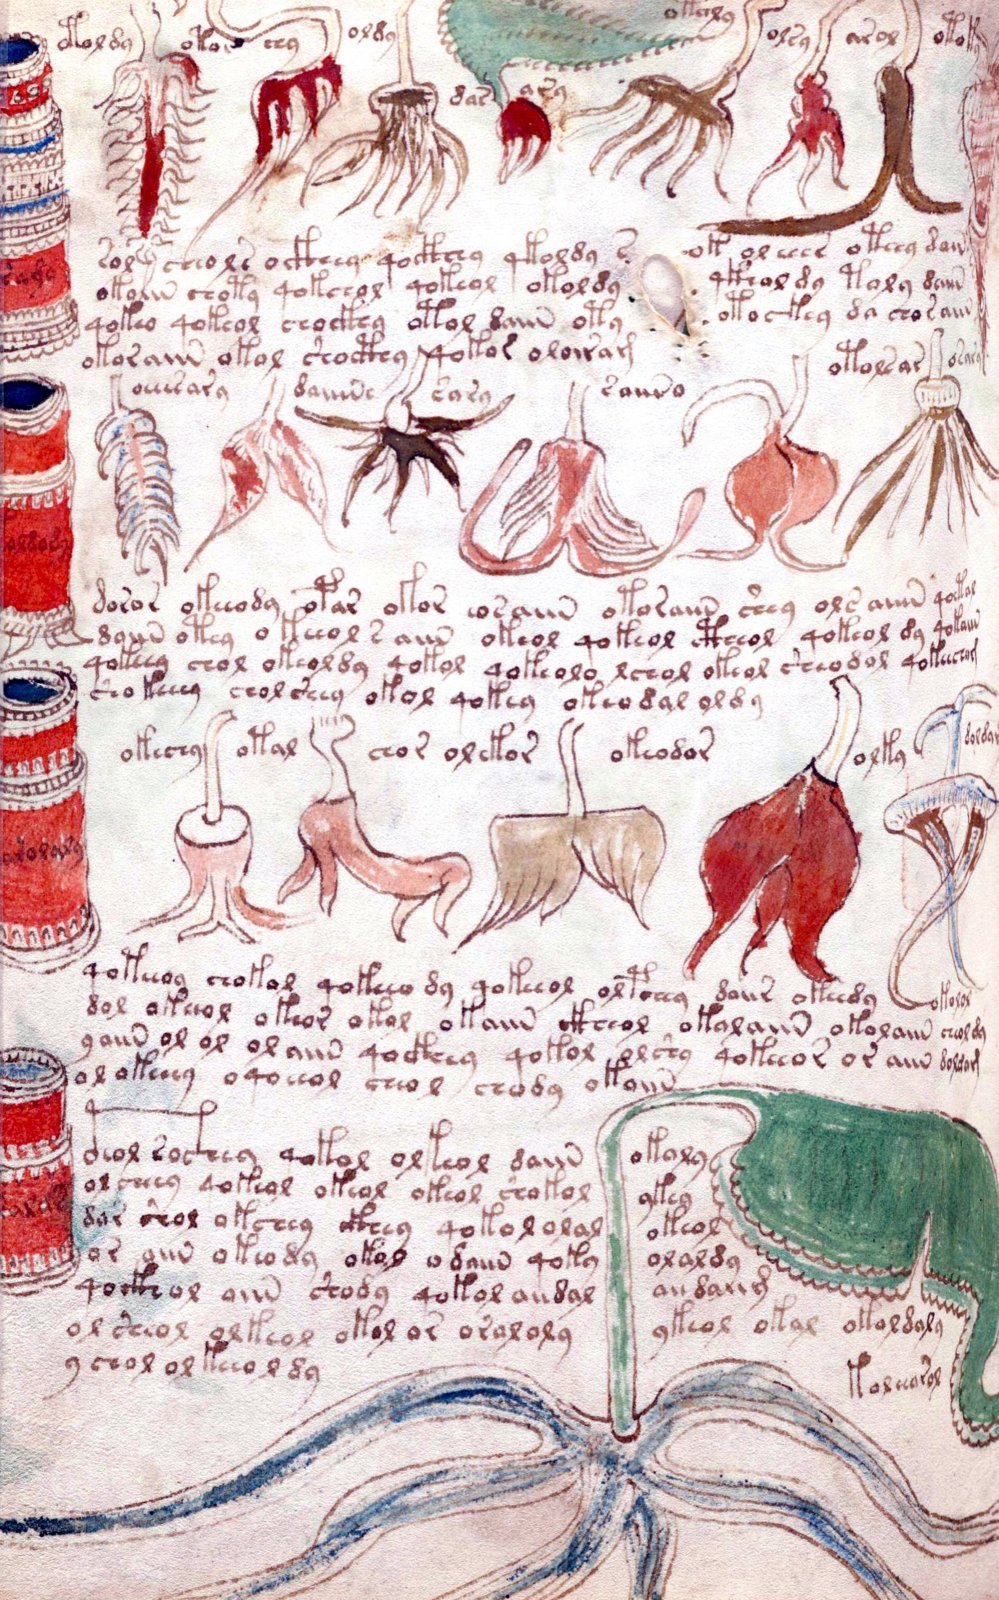 Seite des Voynich-Manuskripts